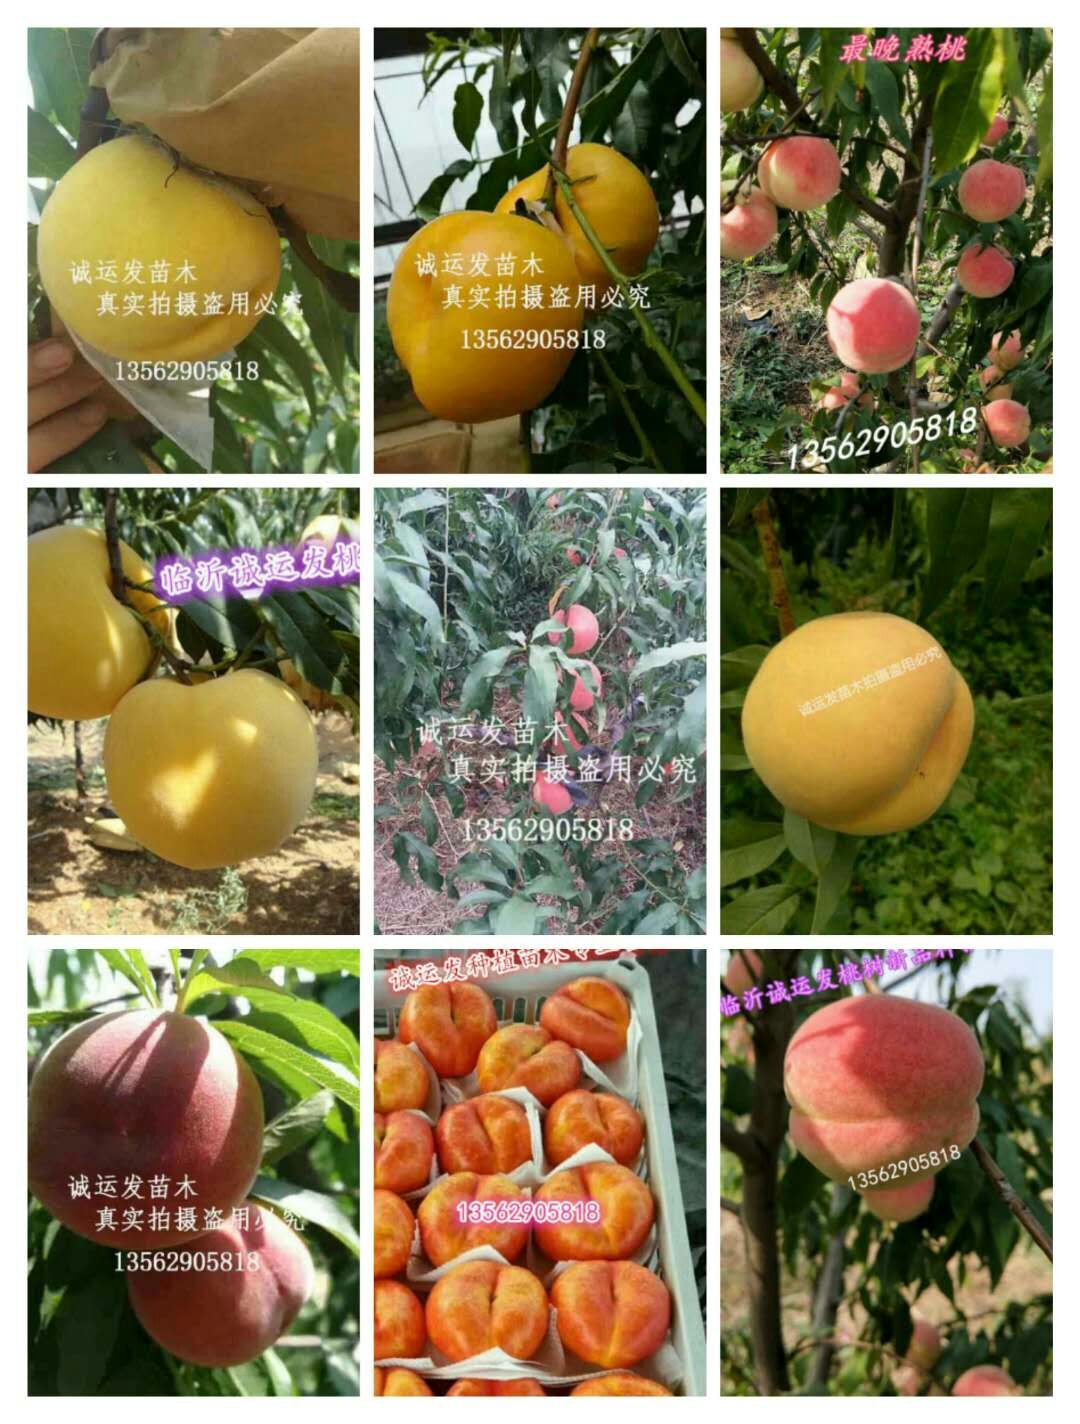 山东早熟黄桃品种介绍蜜4号桃的缺陷		